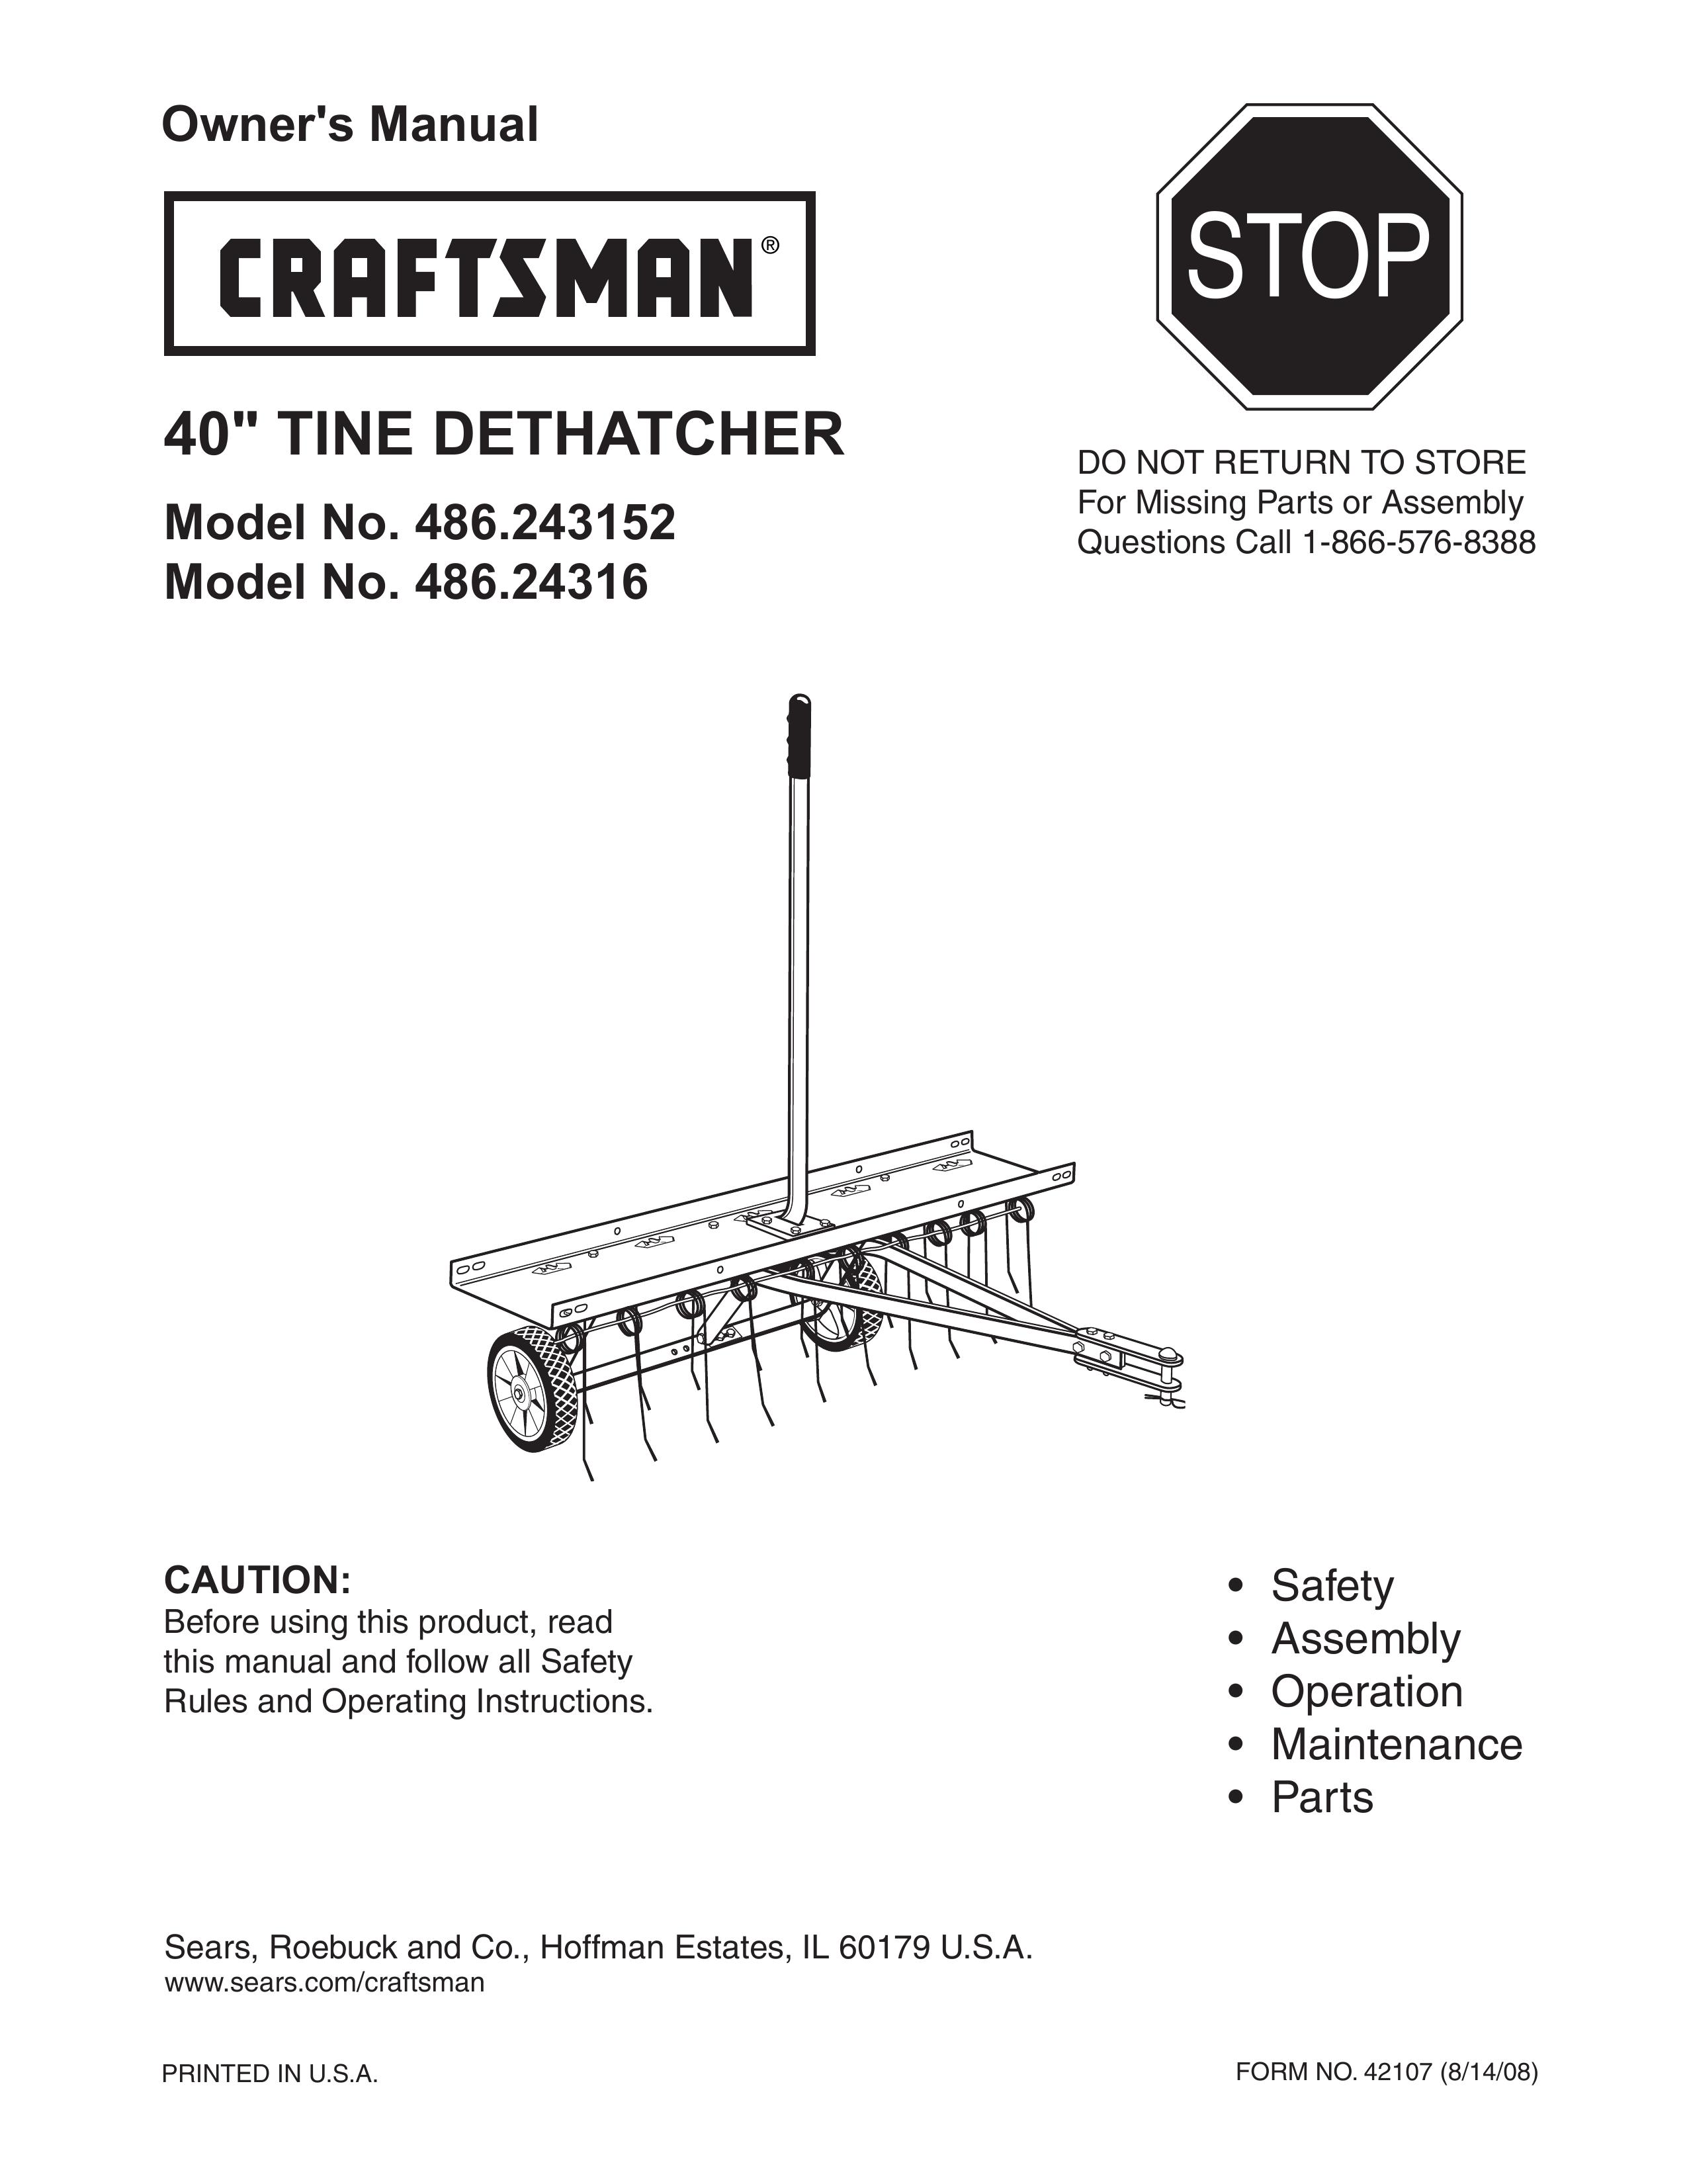 Craftsman 486.24316 Lawn Aerator User Manual